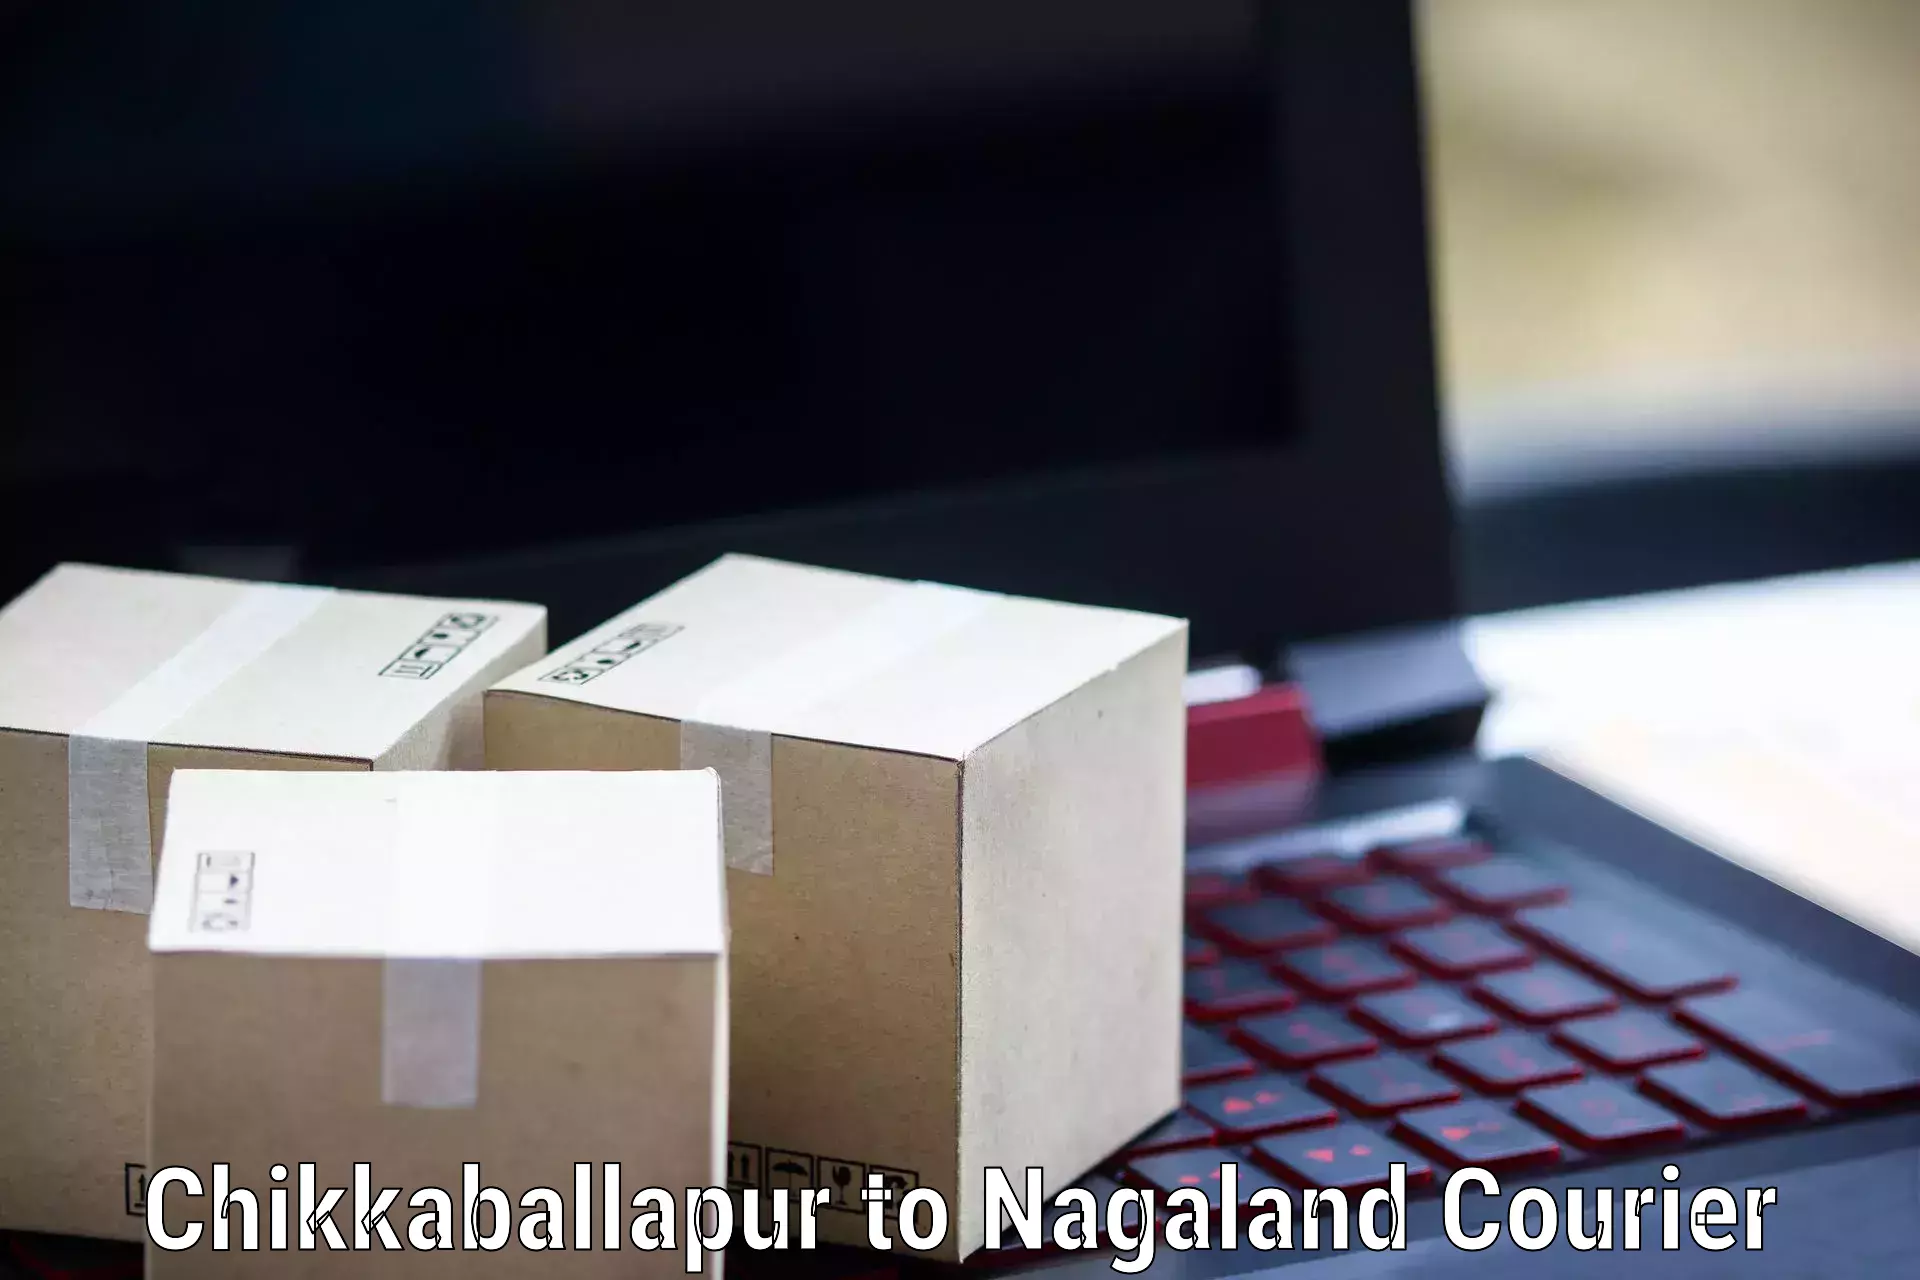 Full-service courier options Chikkaballapur to Peren